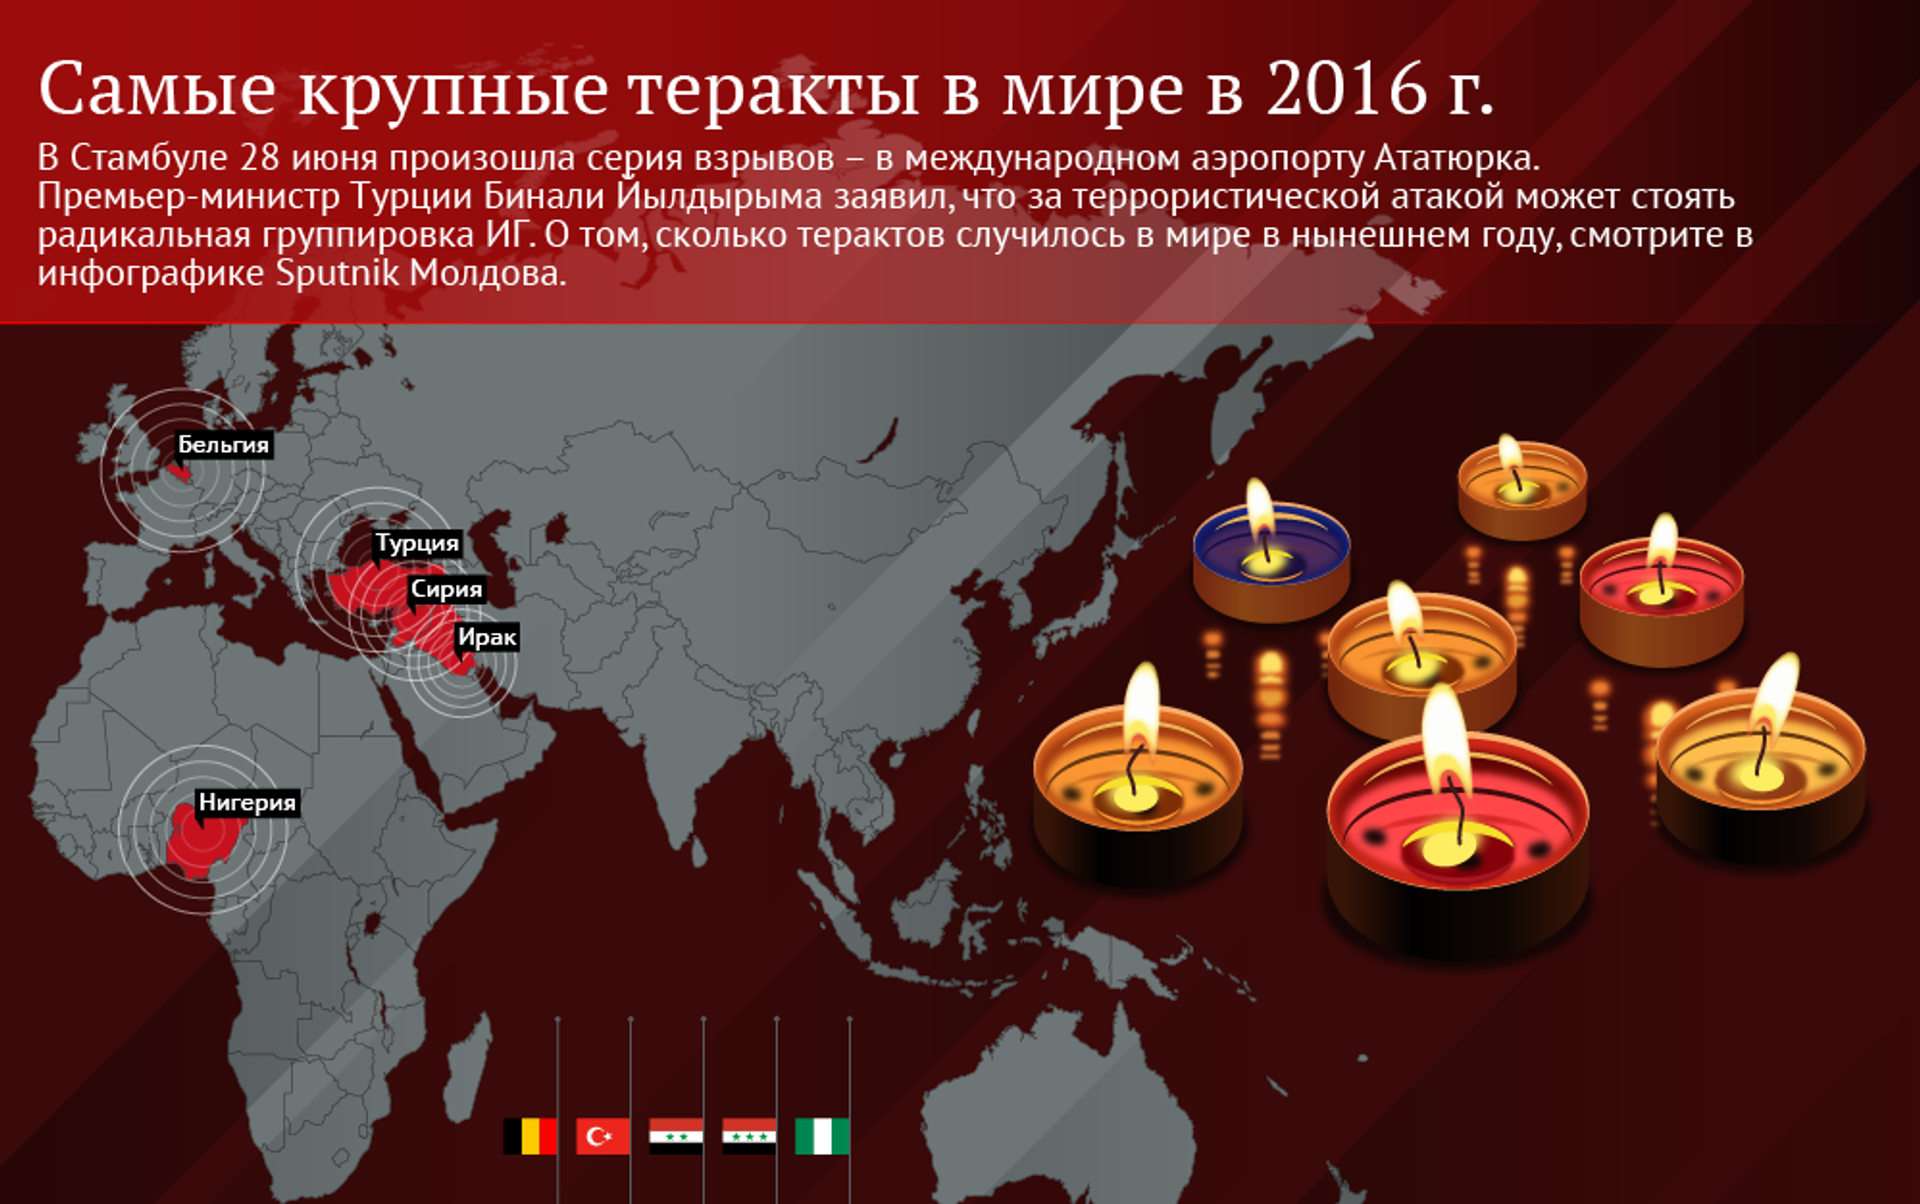 Самые крупные теракты в россии с 2000. Самые крупные теракты в мире. Топ 5 терактов в мире. Крупнейших террористических актах в России и за рубежом.